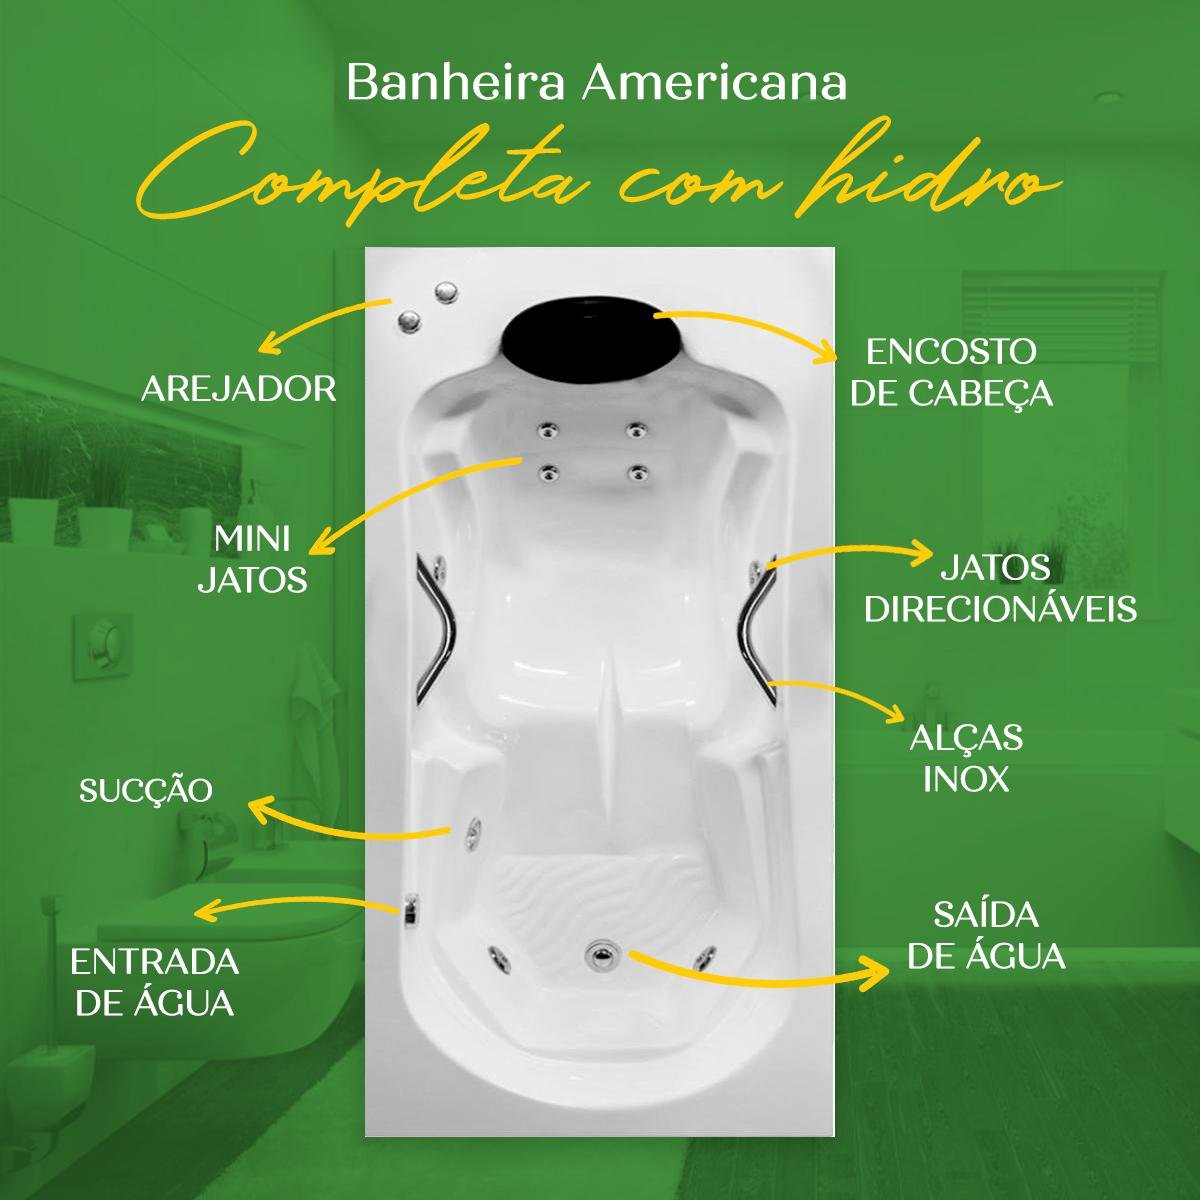 Banheira Americana Completa com Hidro em Acrílico - 4